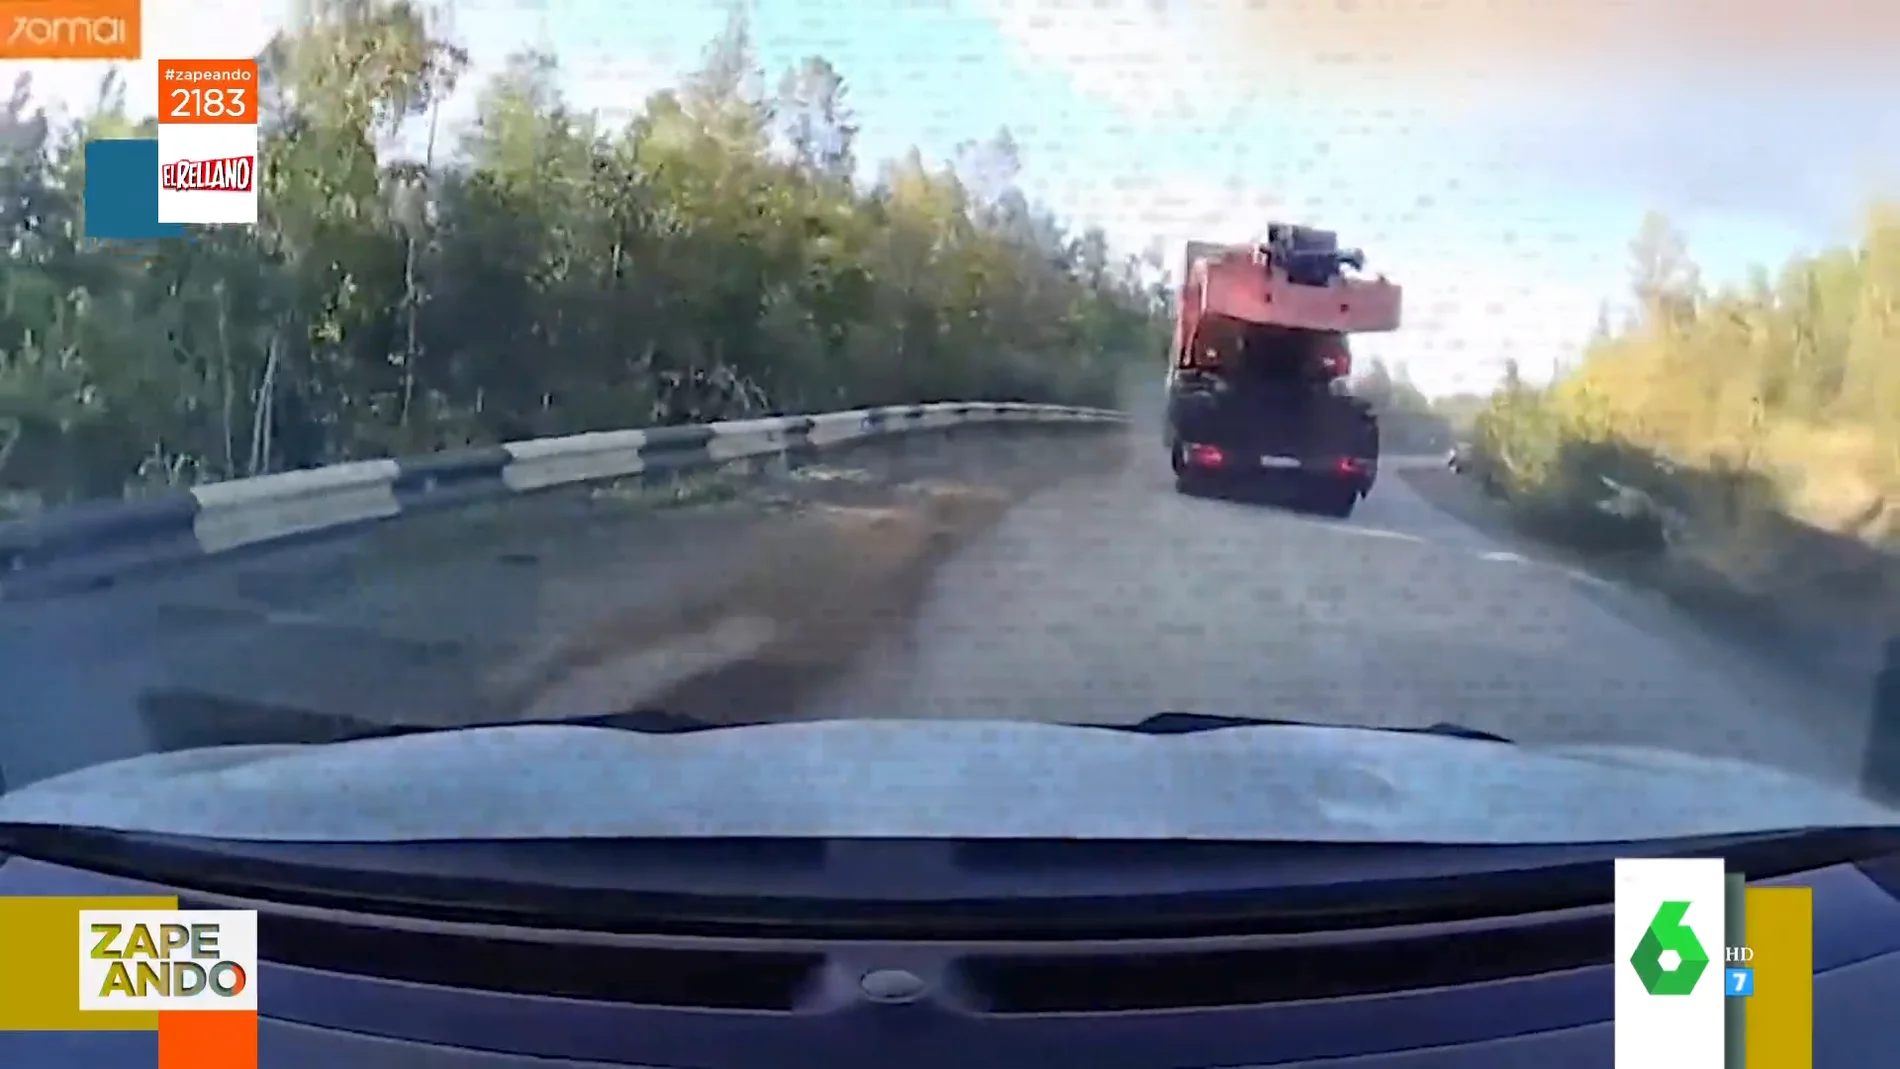 El angustioso momento en el que un camión avanza sin control hacia un coche tras quedadarse sin frenos